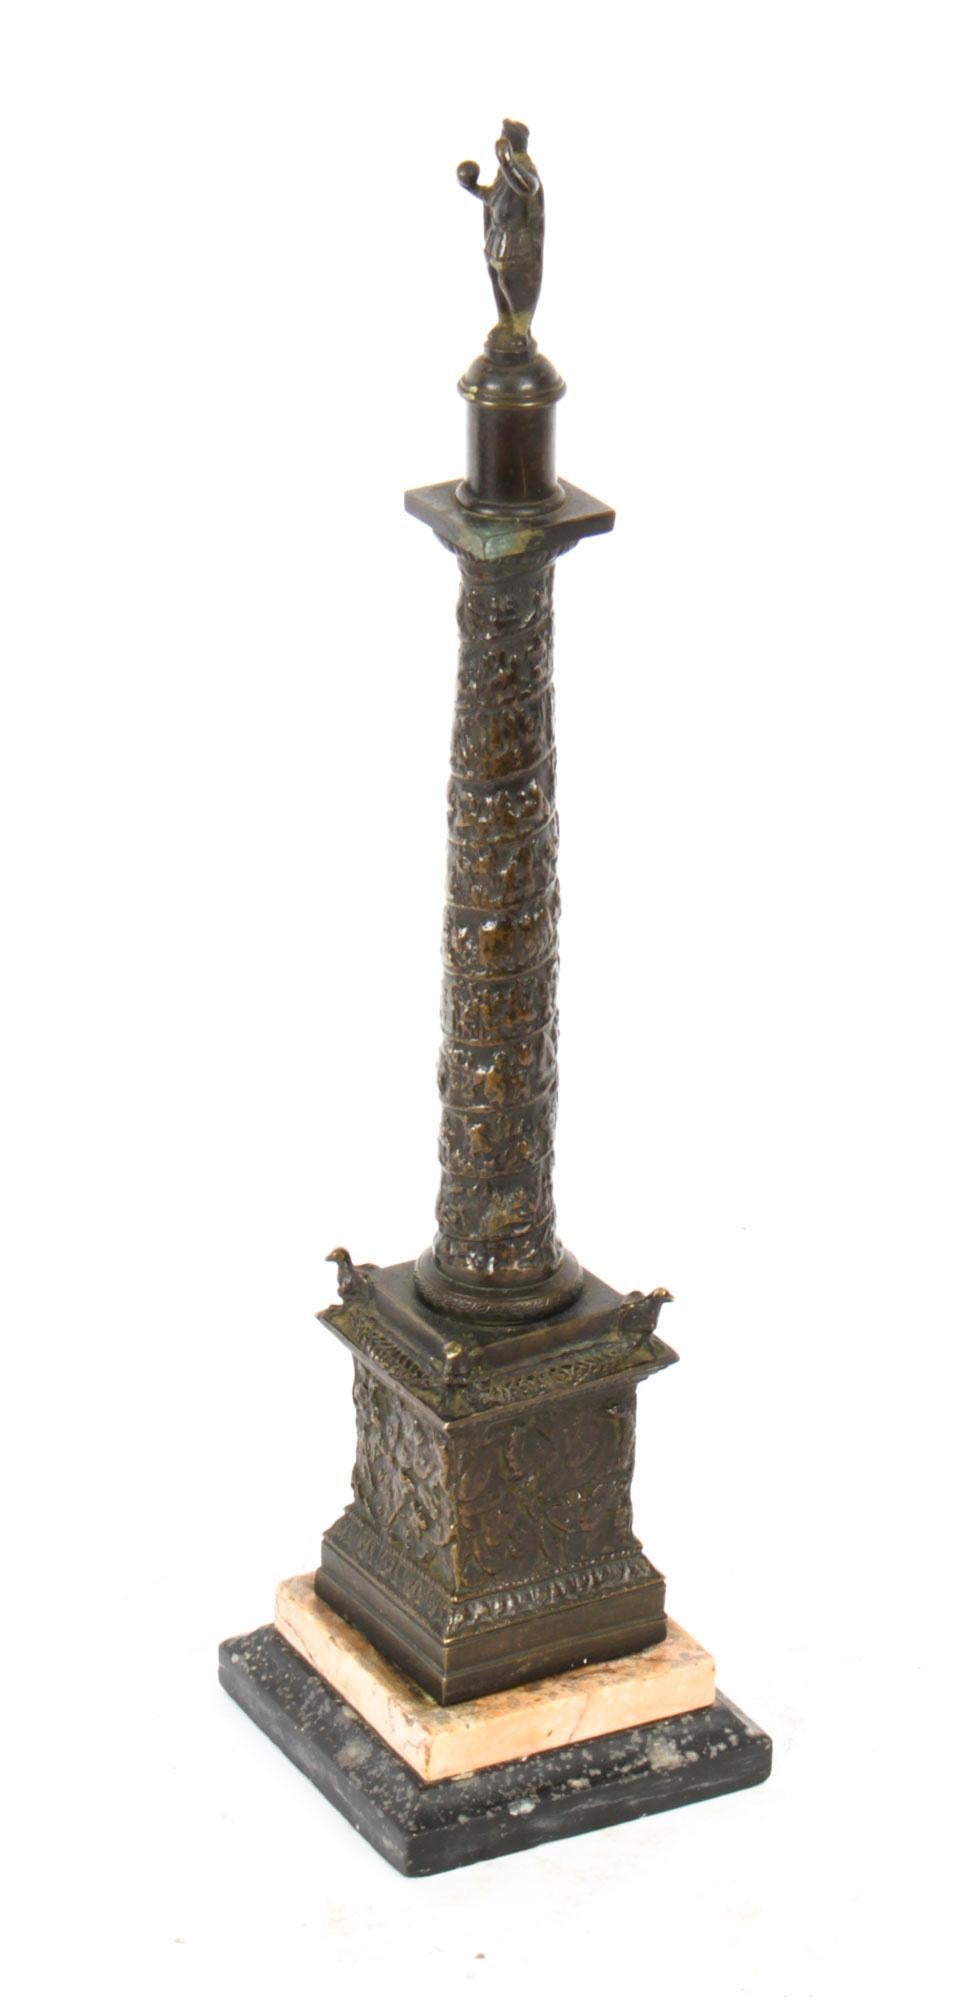 Voici un magnifique modèle ancien en bronze patiné Grand Tour de la colonne de Trajan, datant d'environ 1820.
 
Ce splendide bronze à la tige moulée en relief et au socle lambrissé surmontant une base à gradins en marbre noir et siennois
 
La